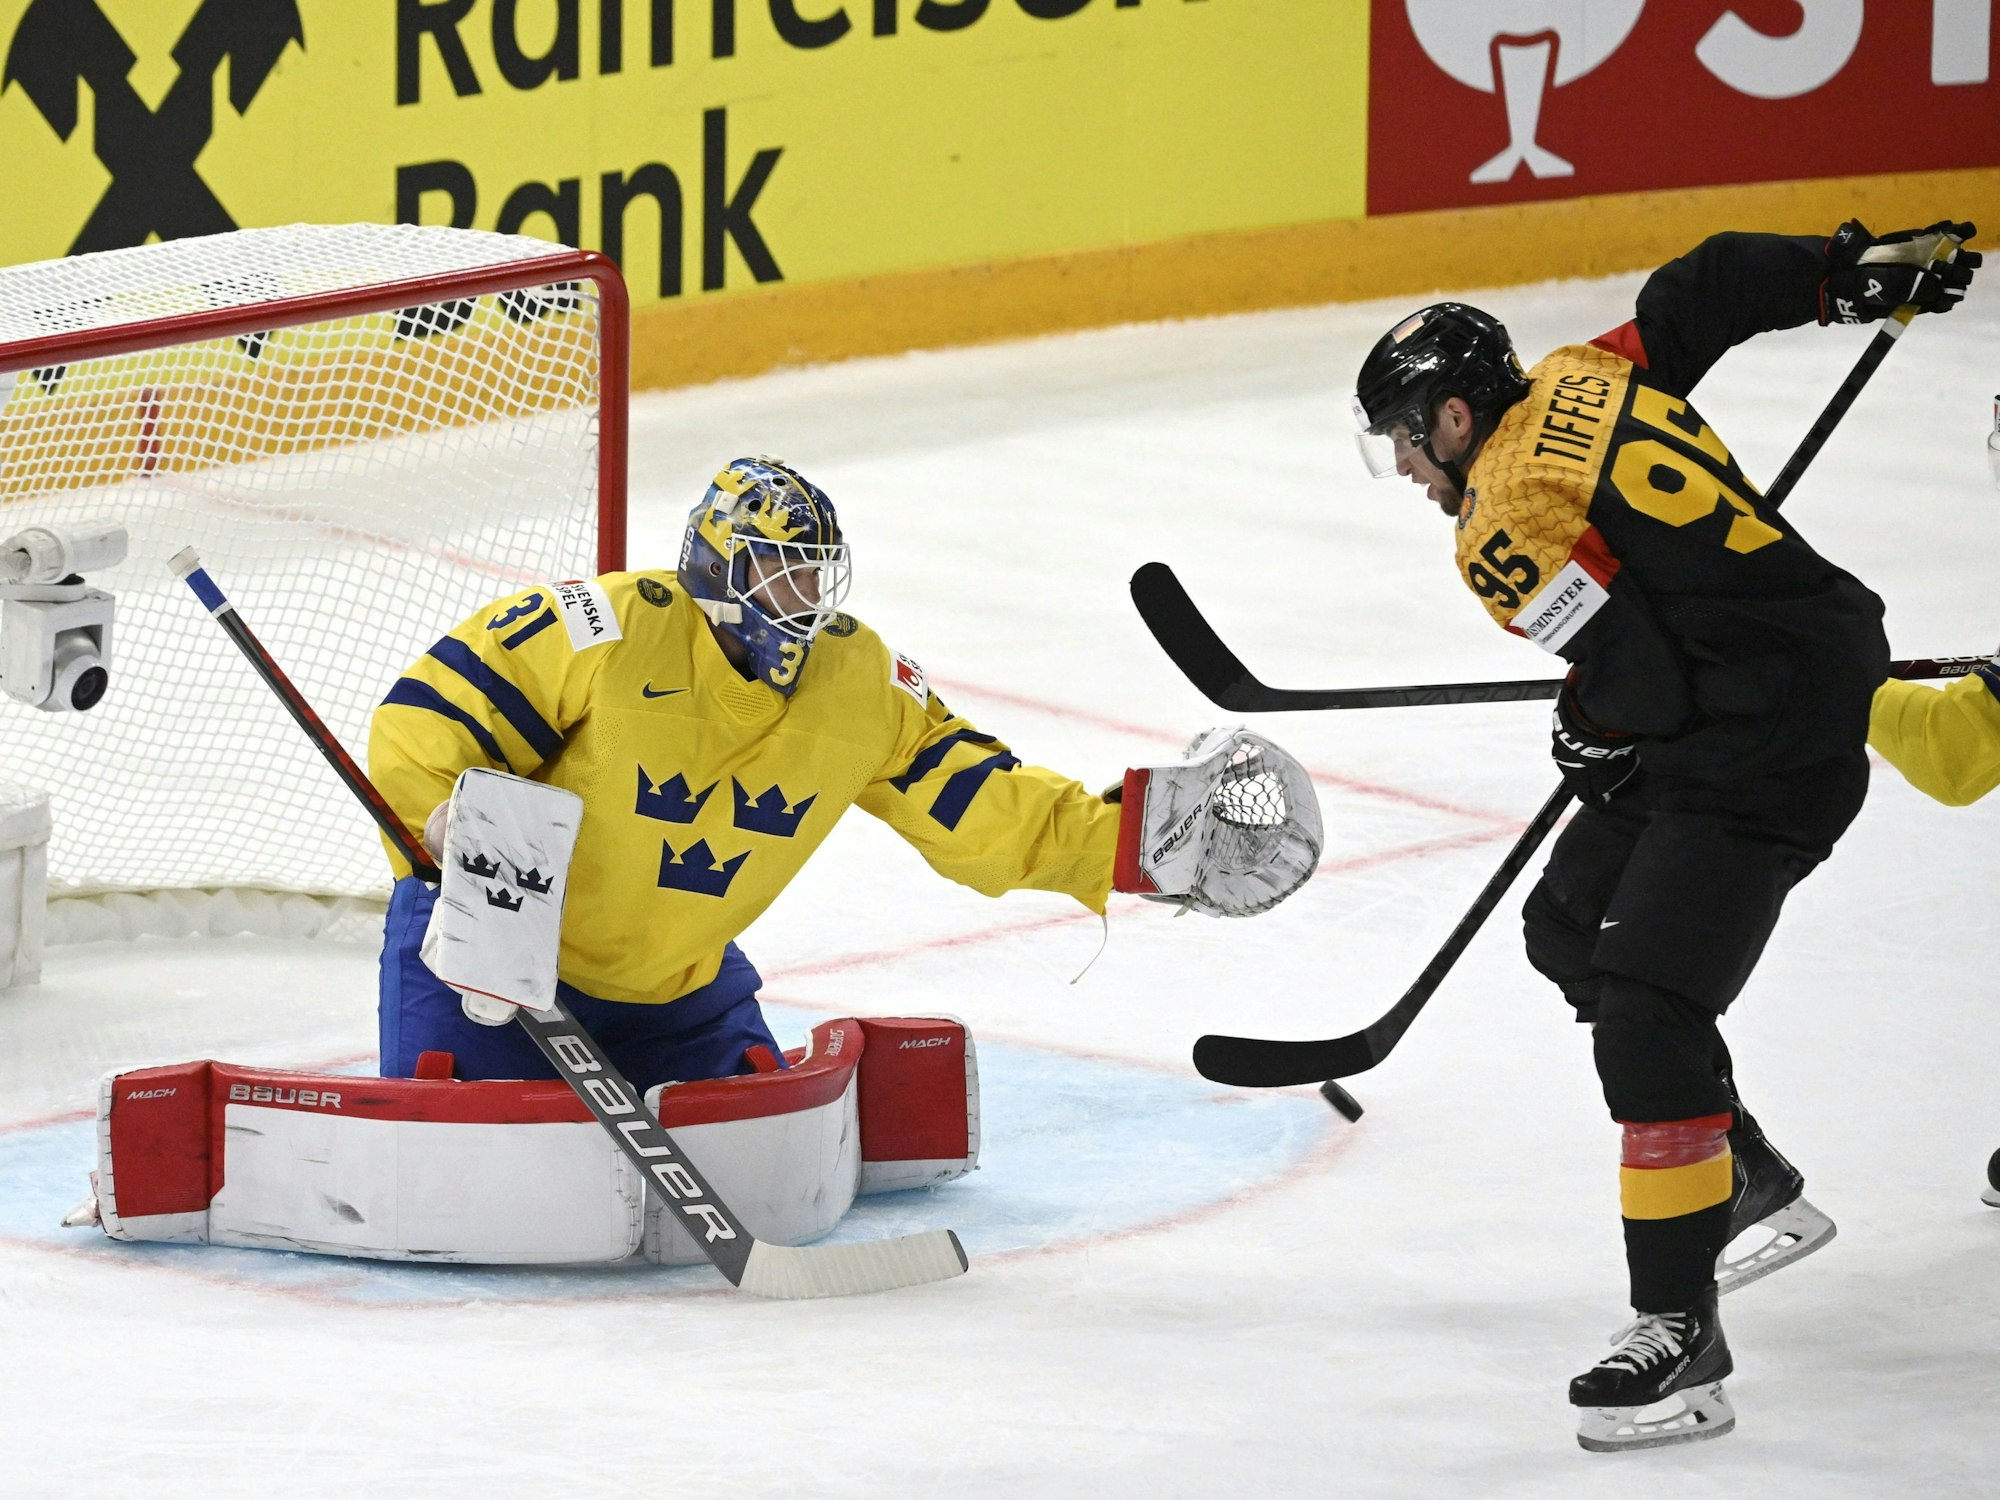 Eishockey-WM: Schweden gegen Deutschland. Frederik Tiffels (r) aus Deutschland gegen Torhüter Lars Johansson aus Schweden.